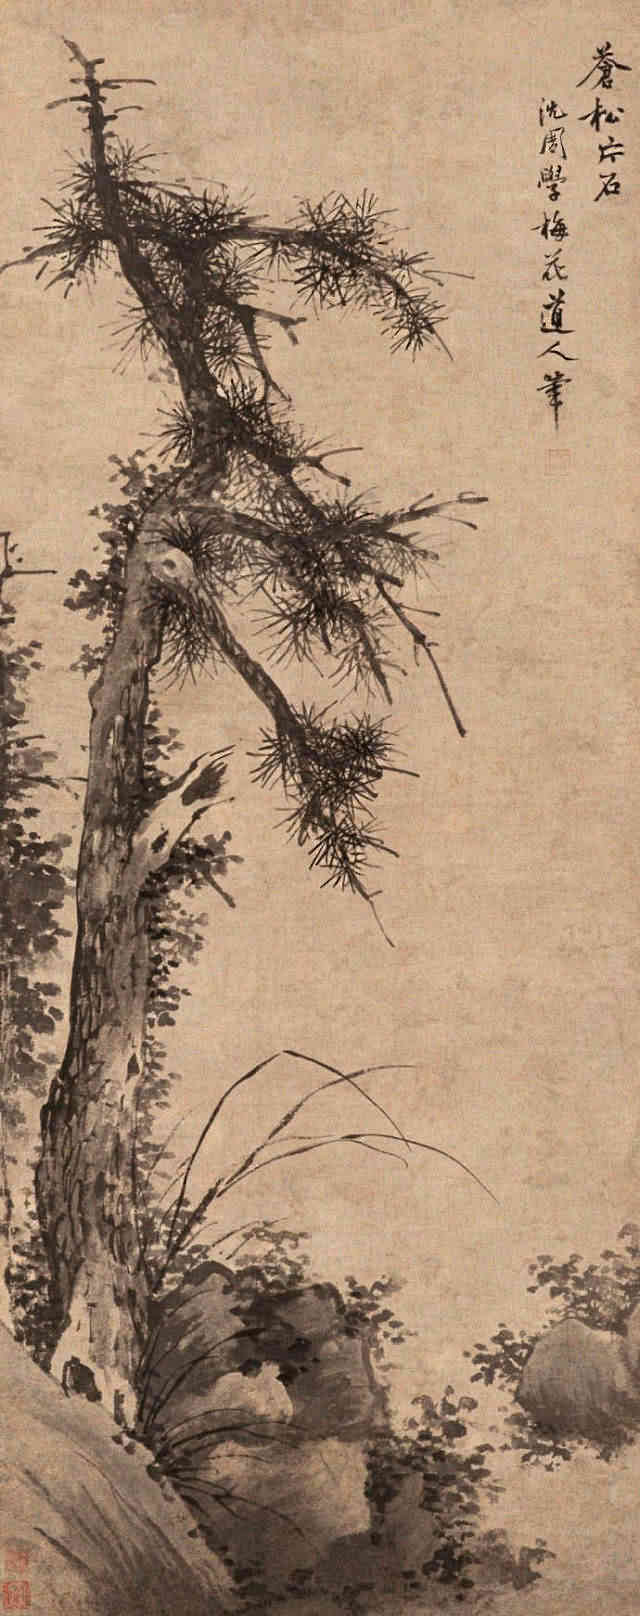 苍松片石图 明 沈周(1427-1509)